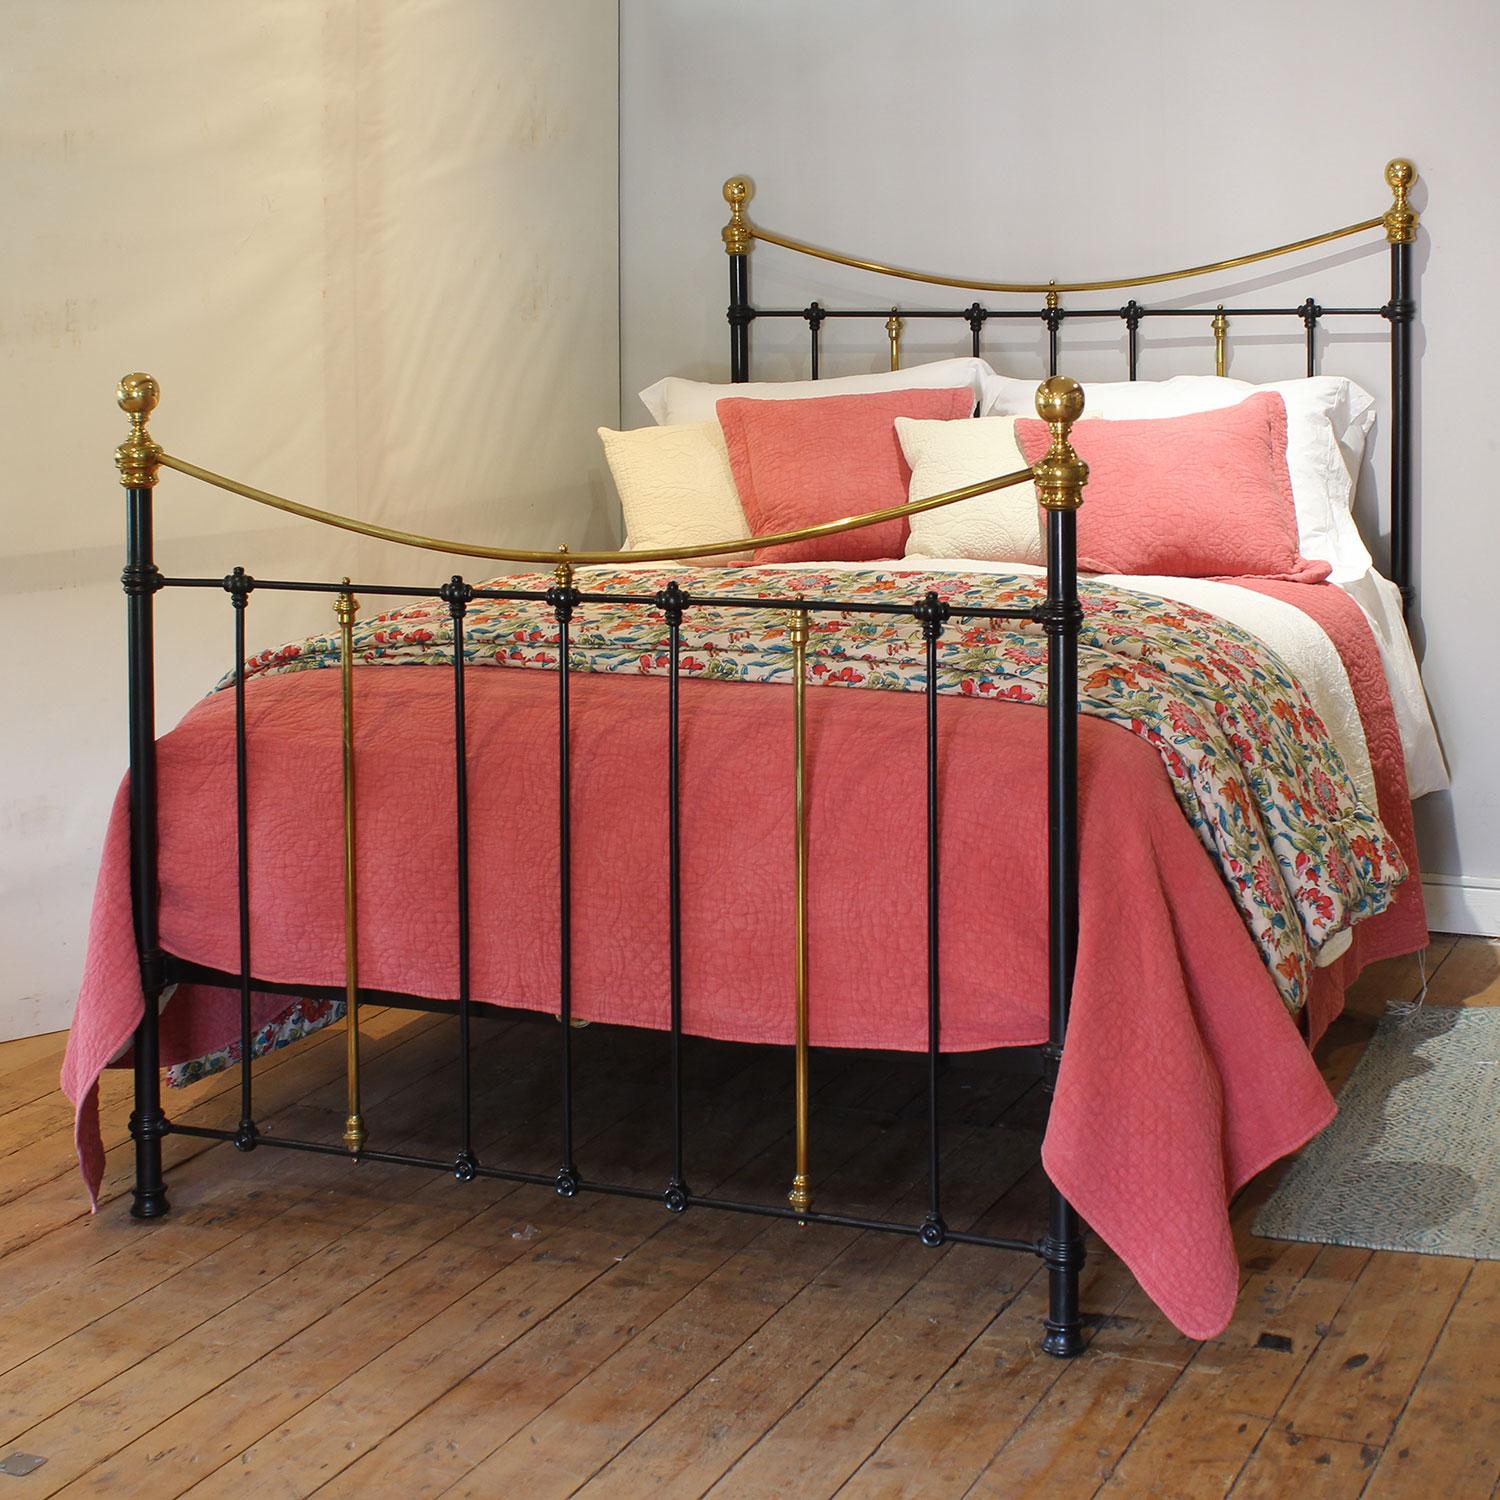 Ein attraktives antikes Bett aus Gusseisen, schwarz lackiert, mit geschwungenen Messinggeländern und einfachen Gussteilen.

Dieses Bett kann mit einem UK-King-Size- oder US-Queen-Size-Matratzen-Set (5ft, 60in oder 150cm breit) ausgestattet